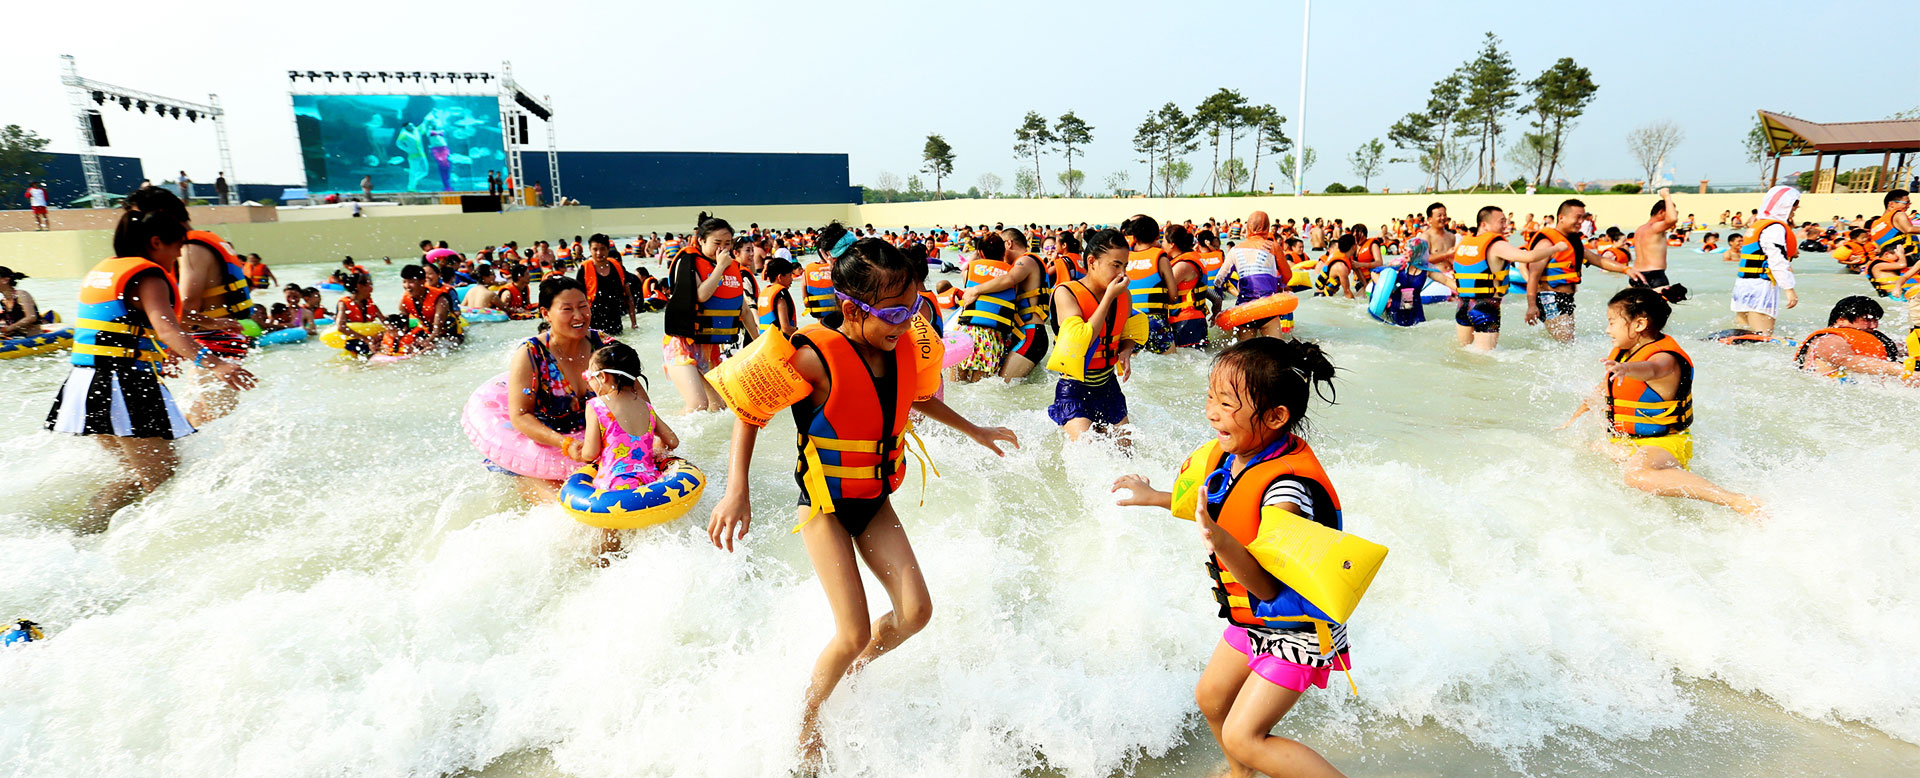 蓬莱欧乐堡水上世界_蓬莱八仙过海国际旅游度假区官方网站